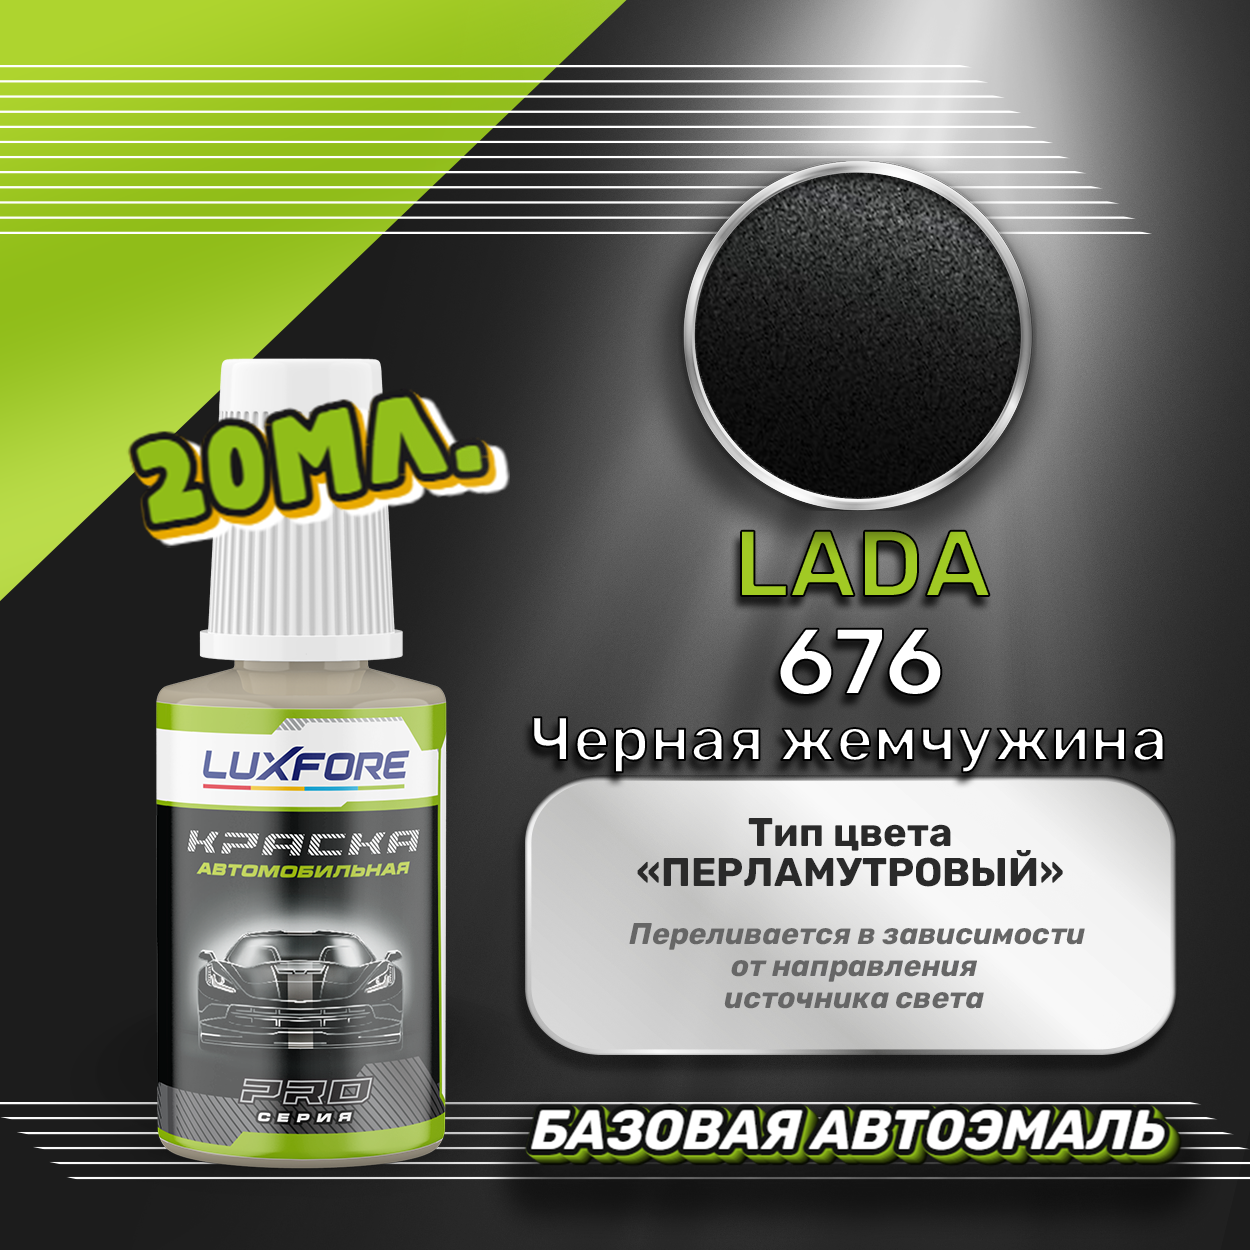 Luxfore автоэмаль базовая LADA 676 Черная жемчужина подкраска 20 мл.